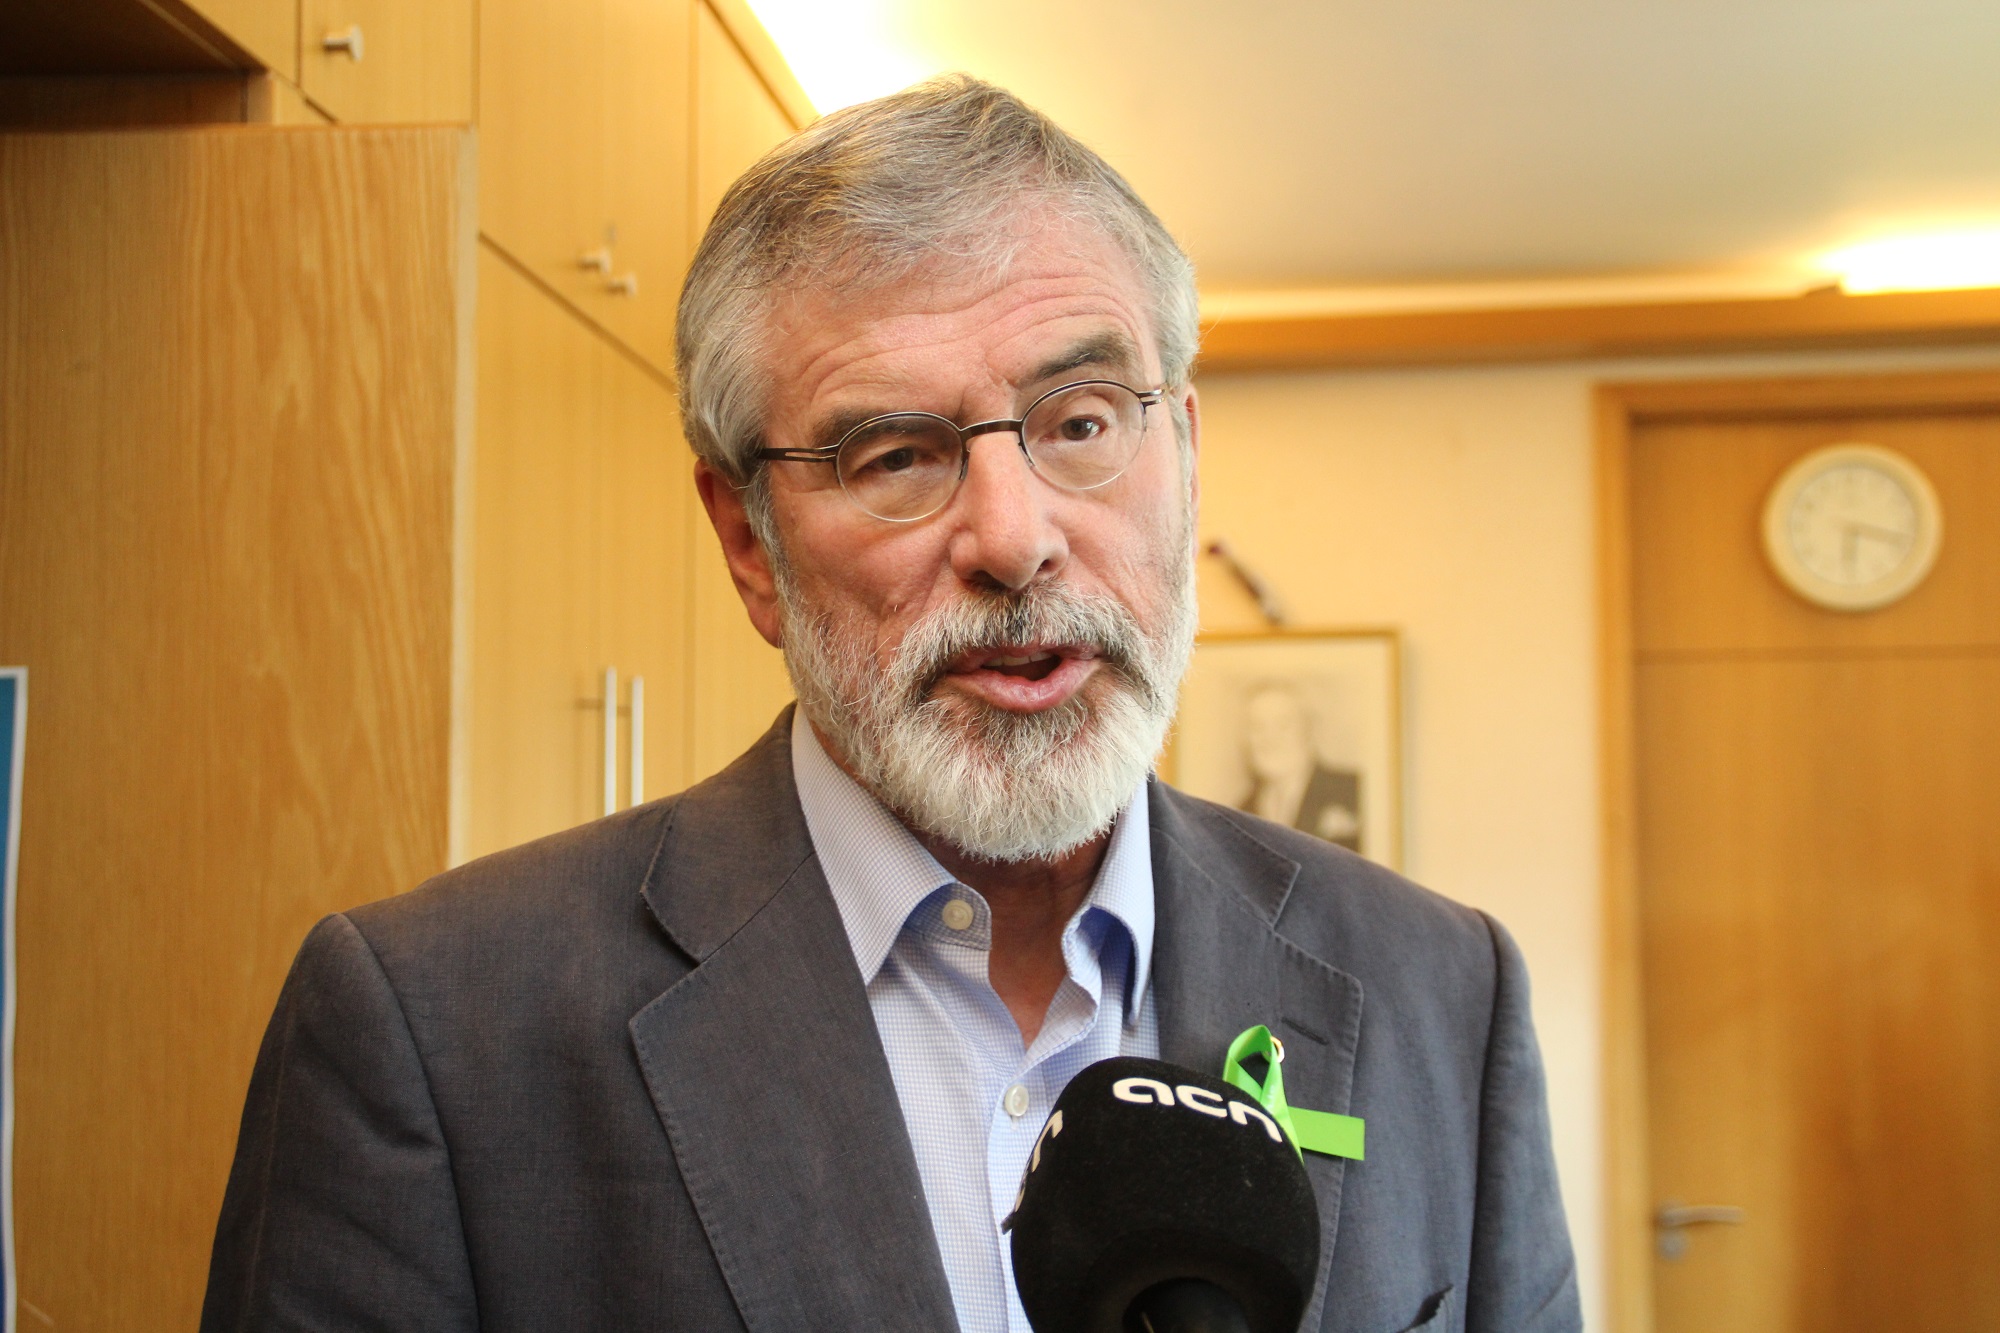 Sinn Féin's leader, Gerry Adams, interviewed by the CNA (by ACN)